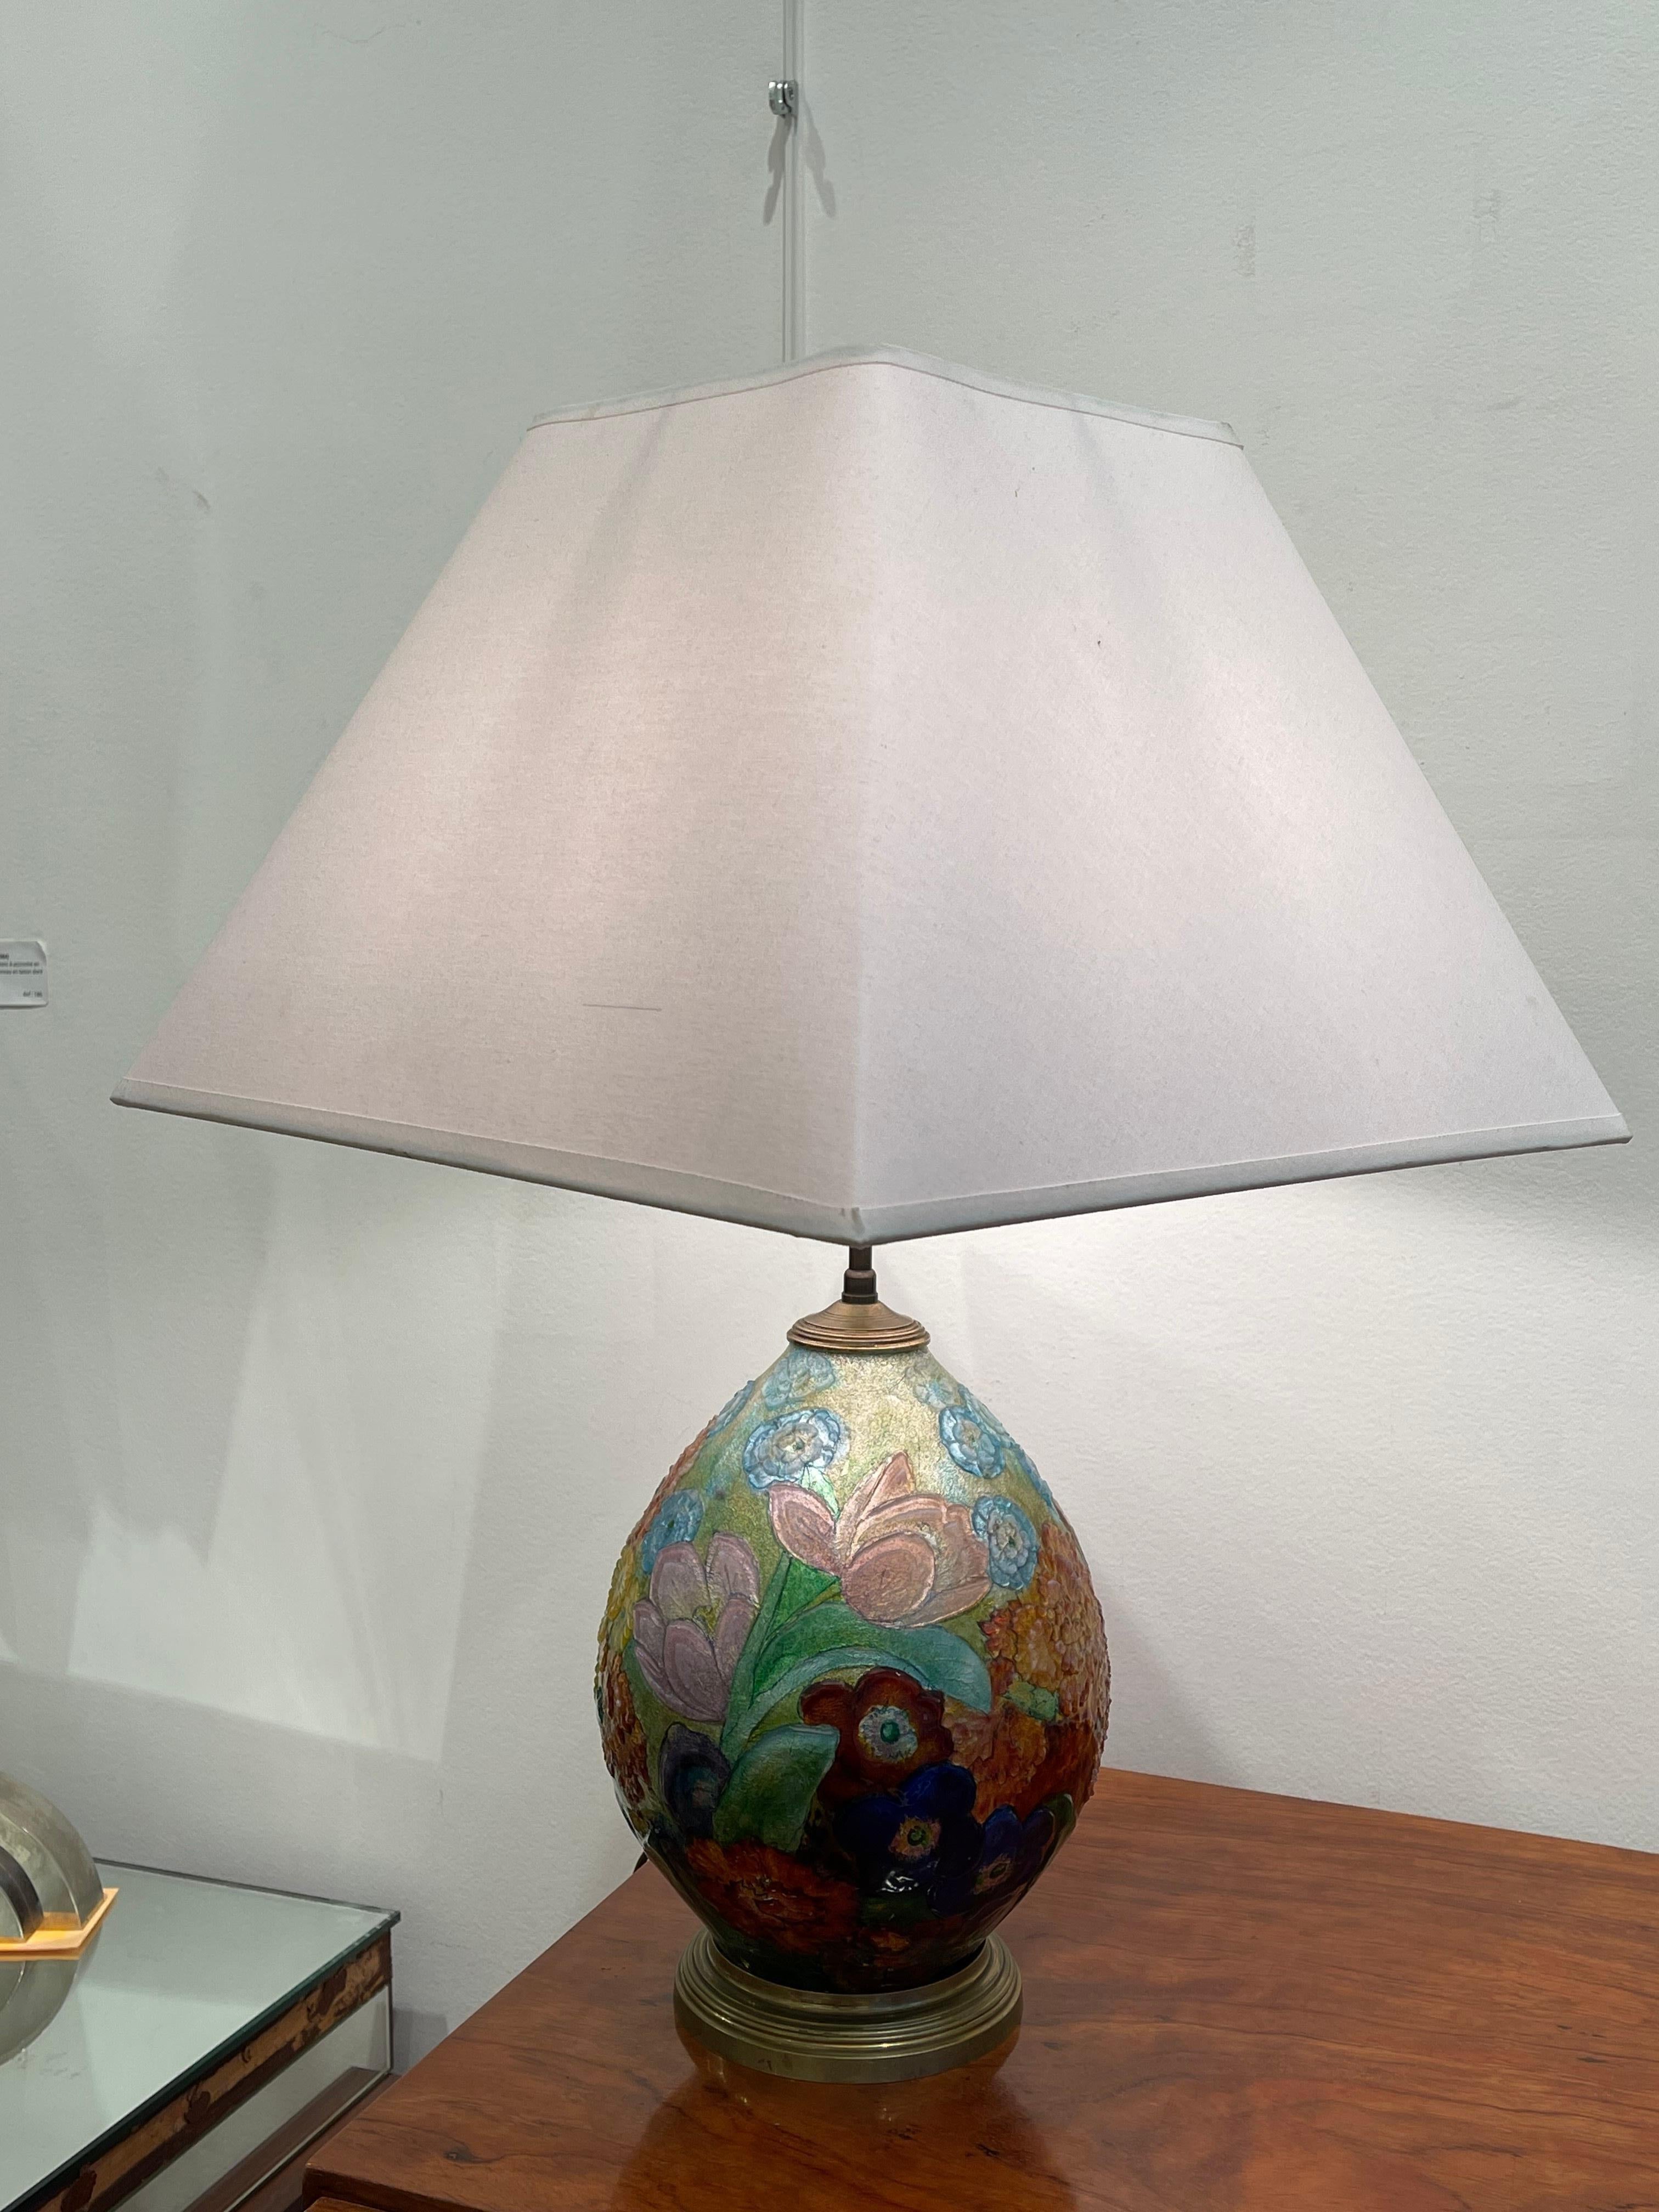 Eccezionale lampada da tavolo di Camille Fauré (1874-1956), il cui laboratorio si trovava a Limoges (Francia). Ha la forma di un uovo in rame completamente ricoperto di smalto policromo e traslucido che rappresenta dei fiori. La qualità dello smalto